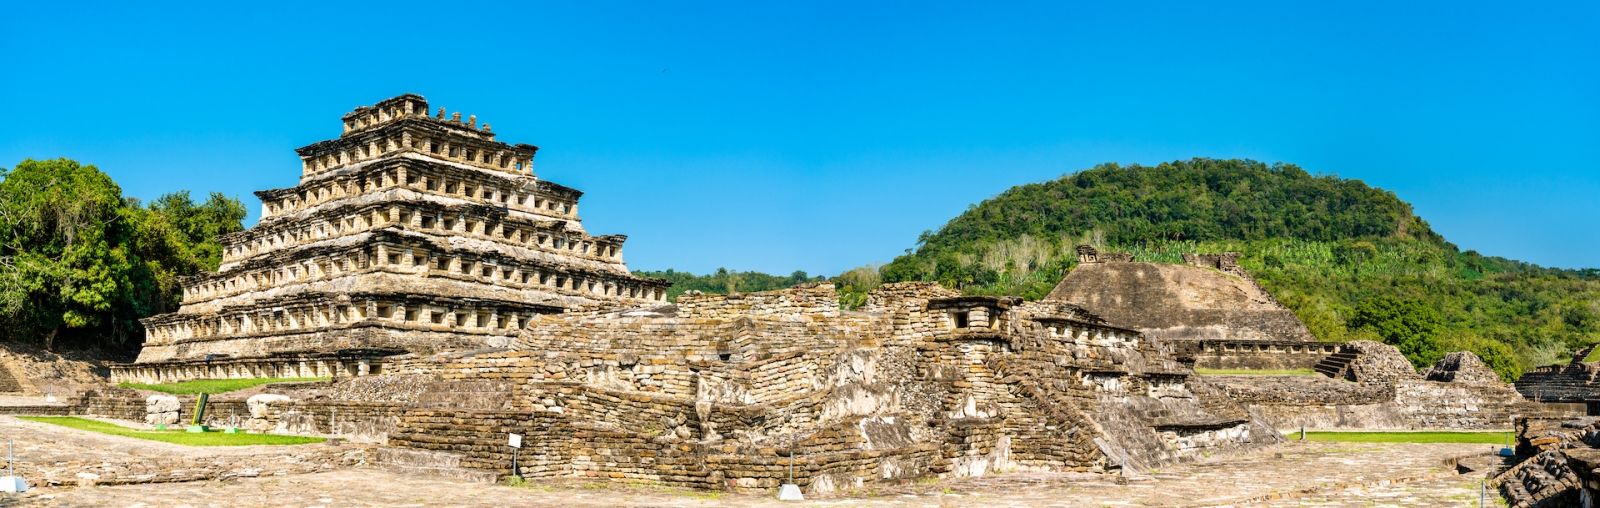 El Tajin, eine präkolumbianische archäologische Stätte im Süden Mexikos